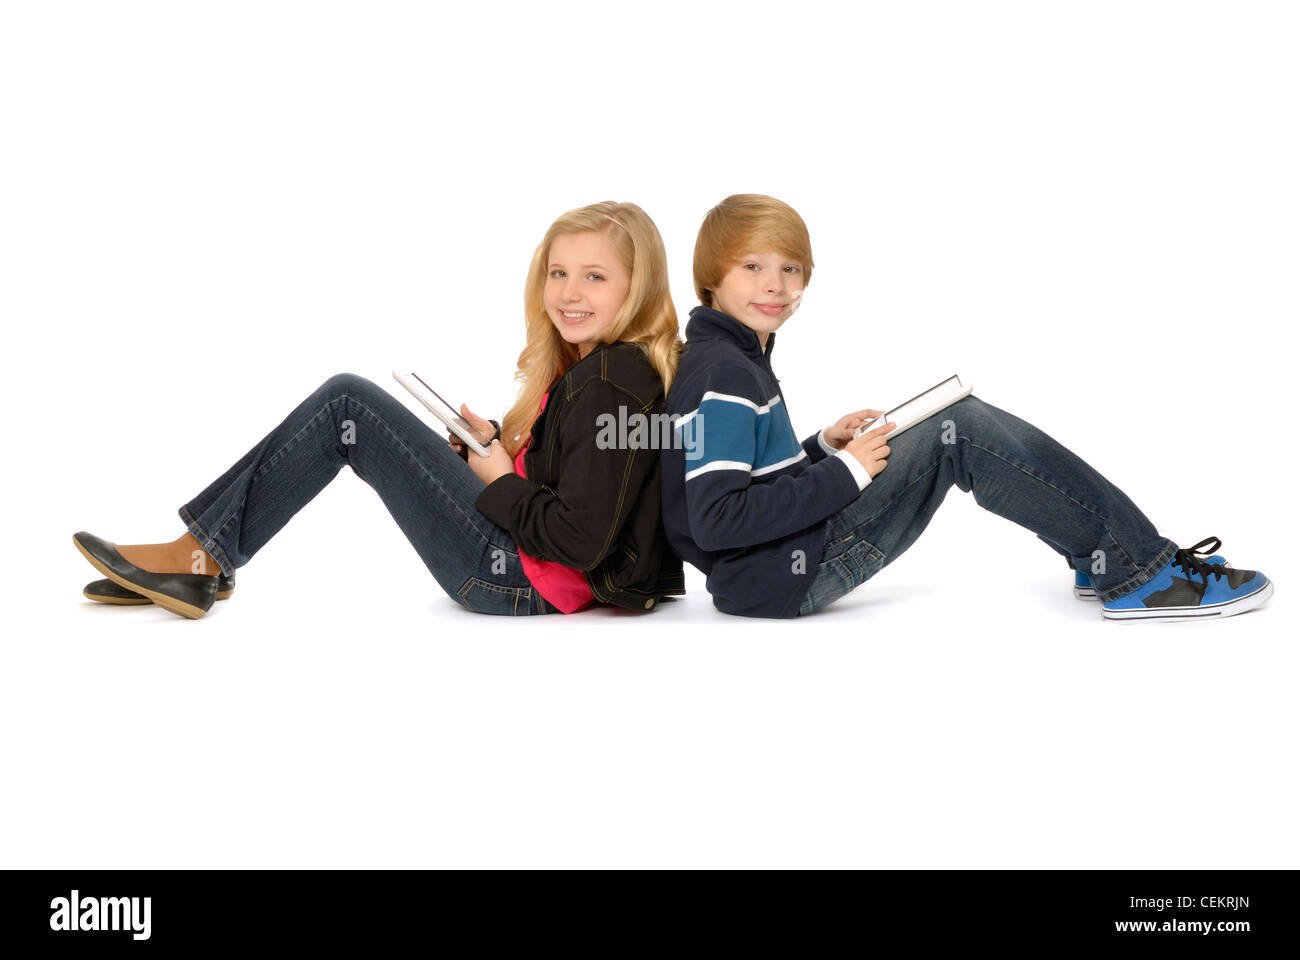 Zehn Jahre altes Mädchen und elf Jahre alten Jungen, Geschwister, sitzen Rücken an Rücken mit Tablet-PCs und lächelnd. Stockfoto